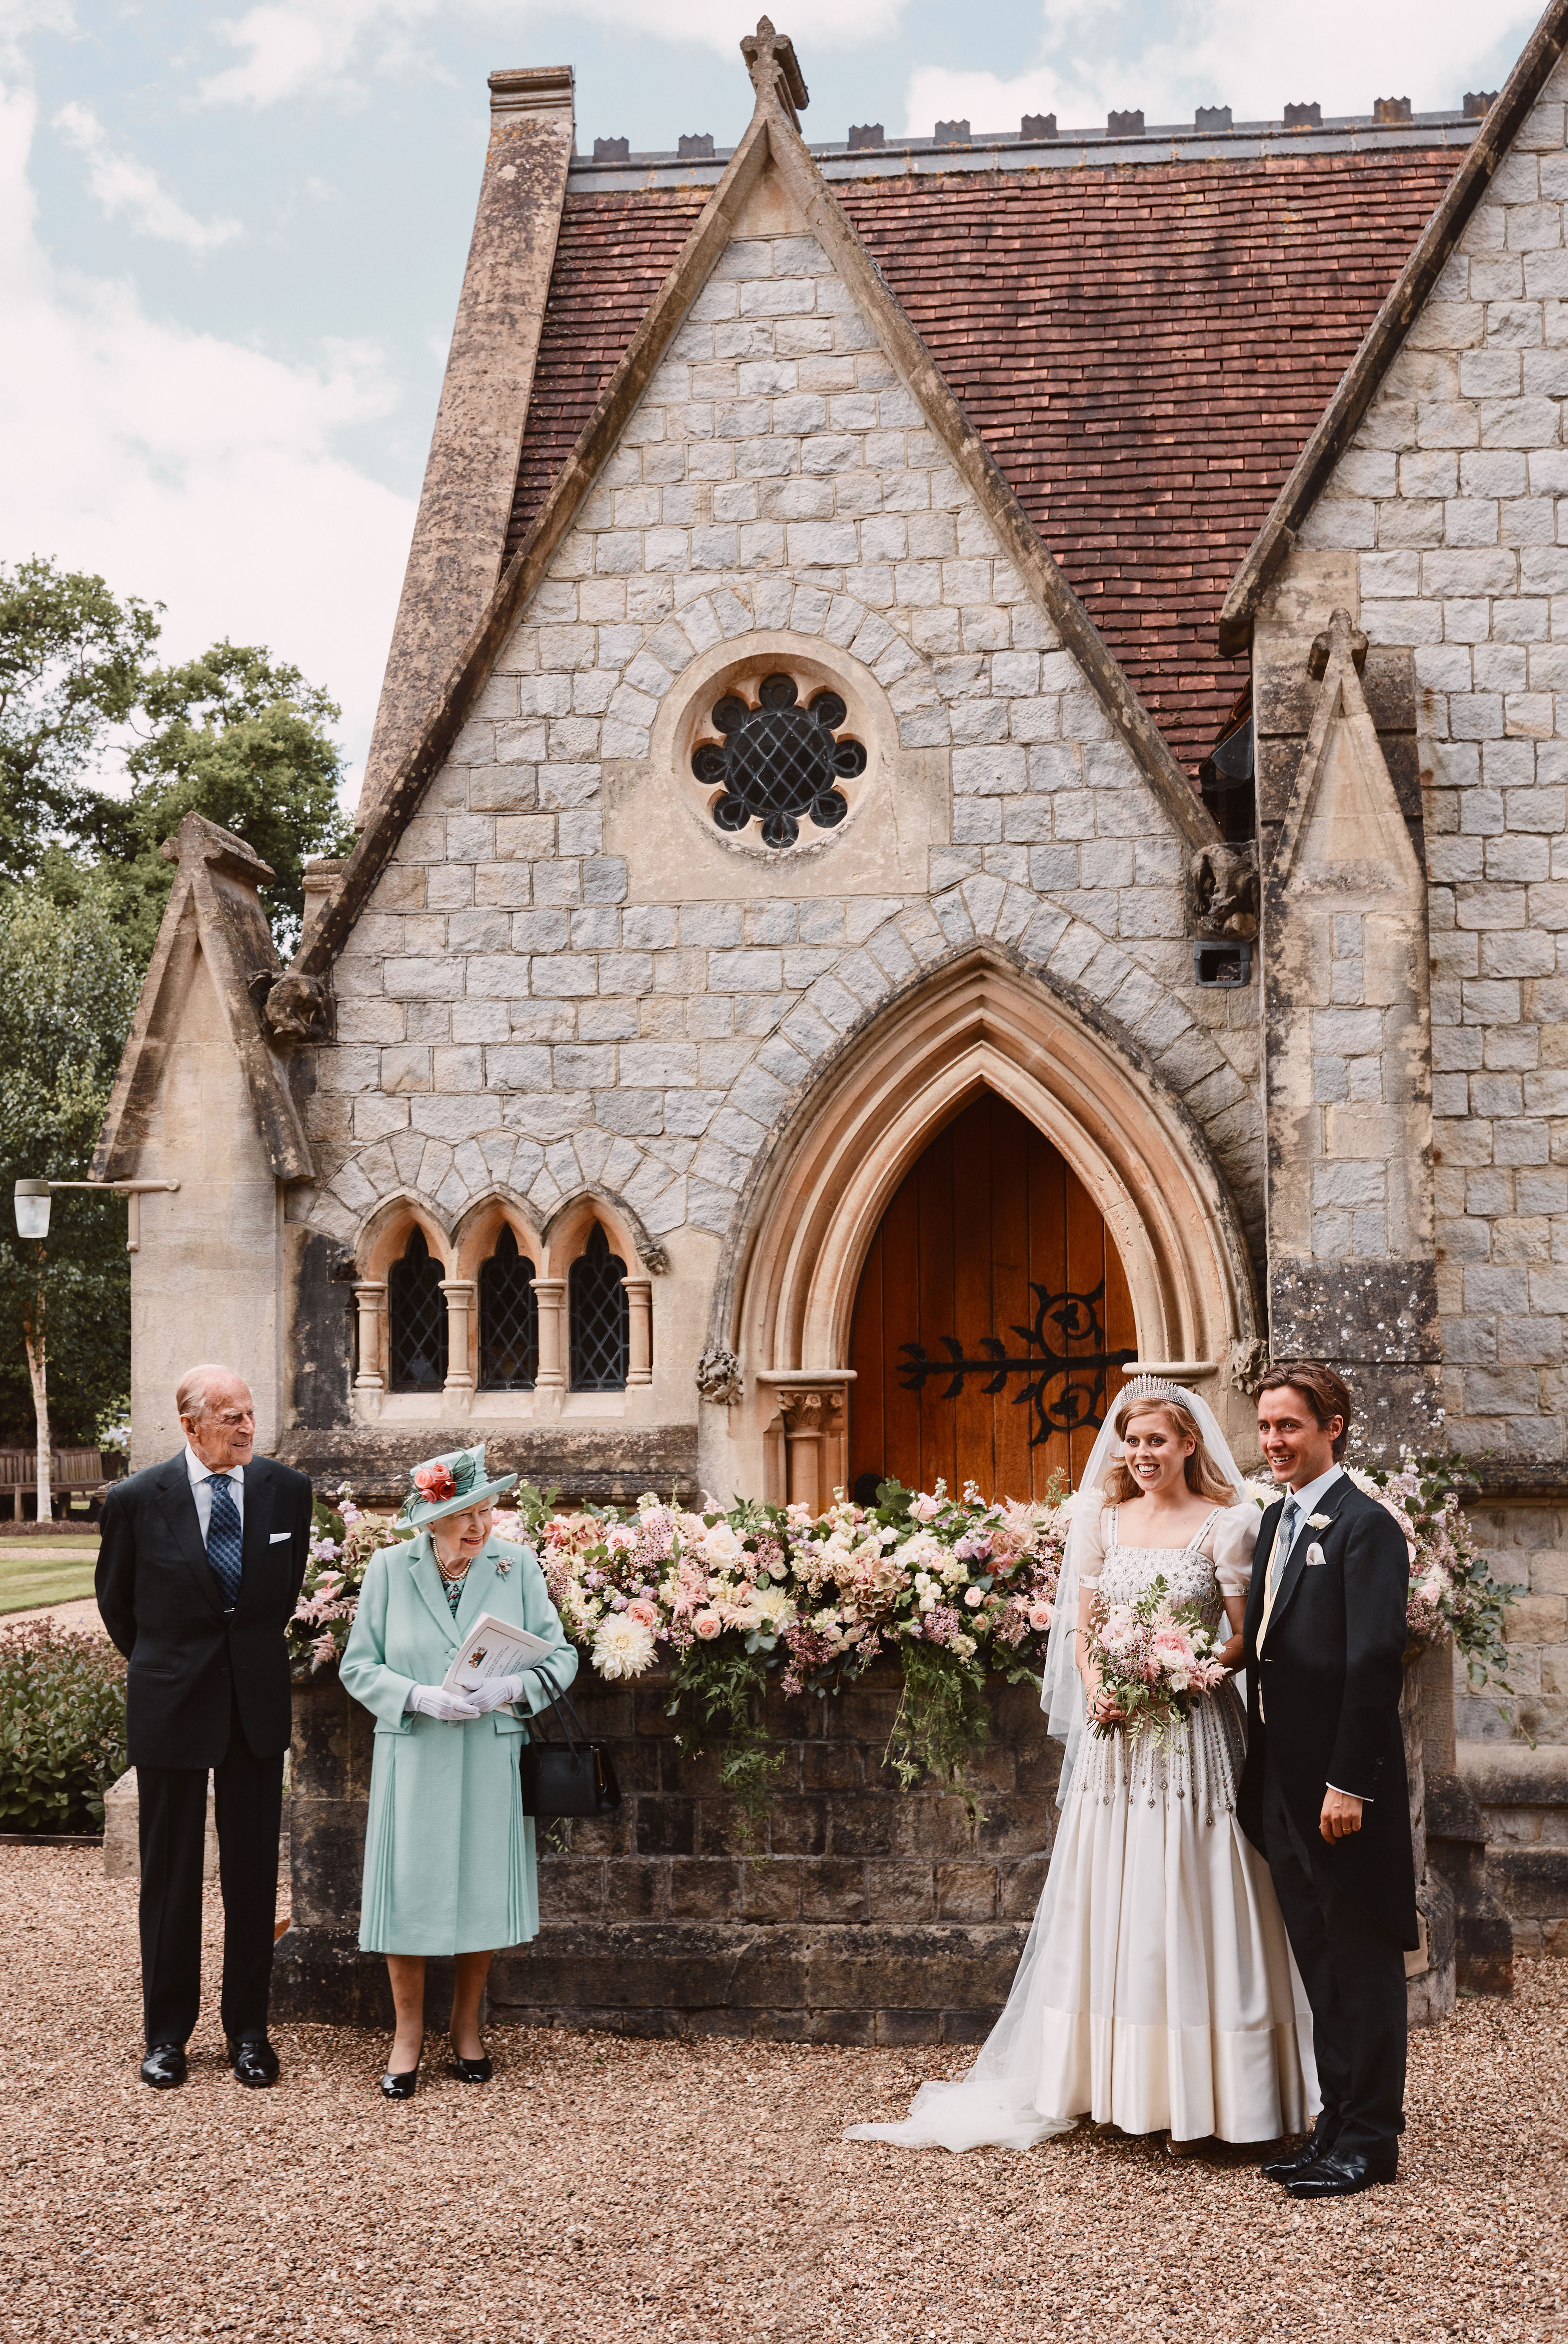 La princesa Beatrice y Edoardo Mapelli Mozzi en el exterior de la Capilla Real de Todos los Santos en Royal Lodge, Windsor, después de su boda, con la reina Elizabeth II y el príncipe Phillip, duque de Edimburgo, el 18 de julio de 2020, en Inglaterra. | Foto: Getty Images